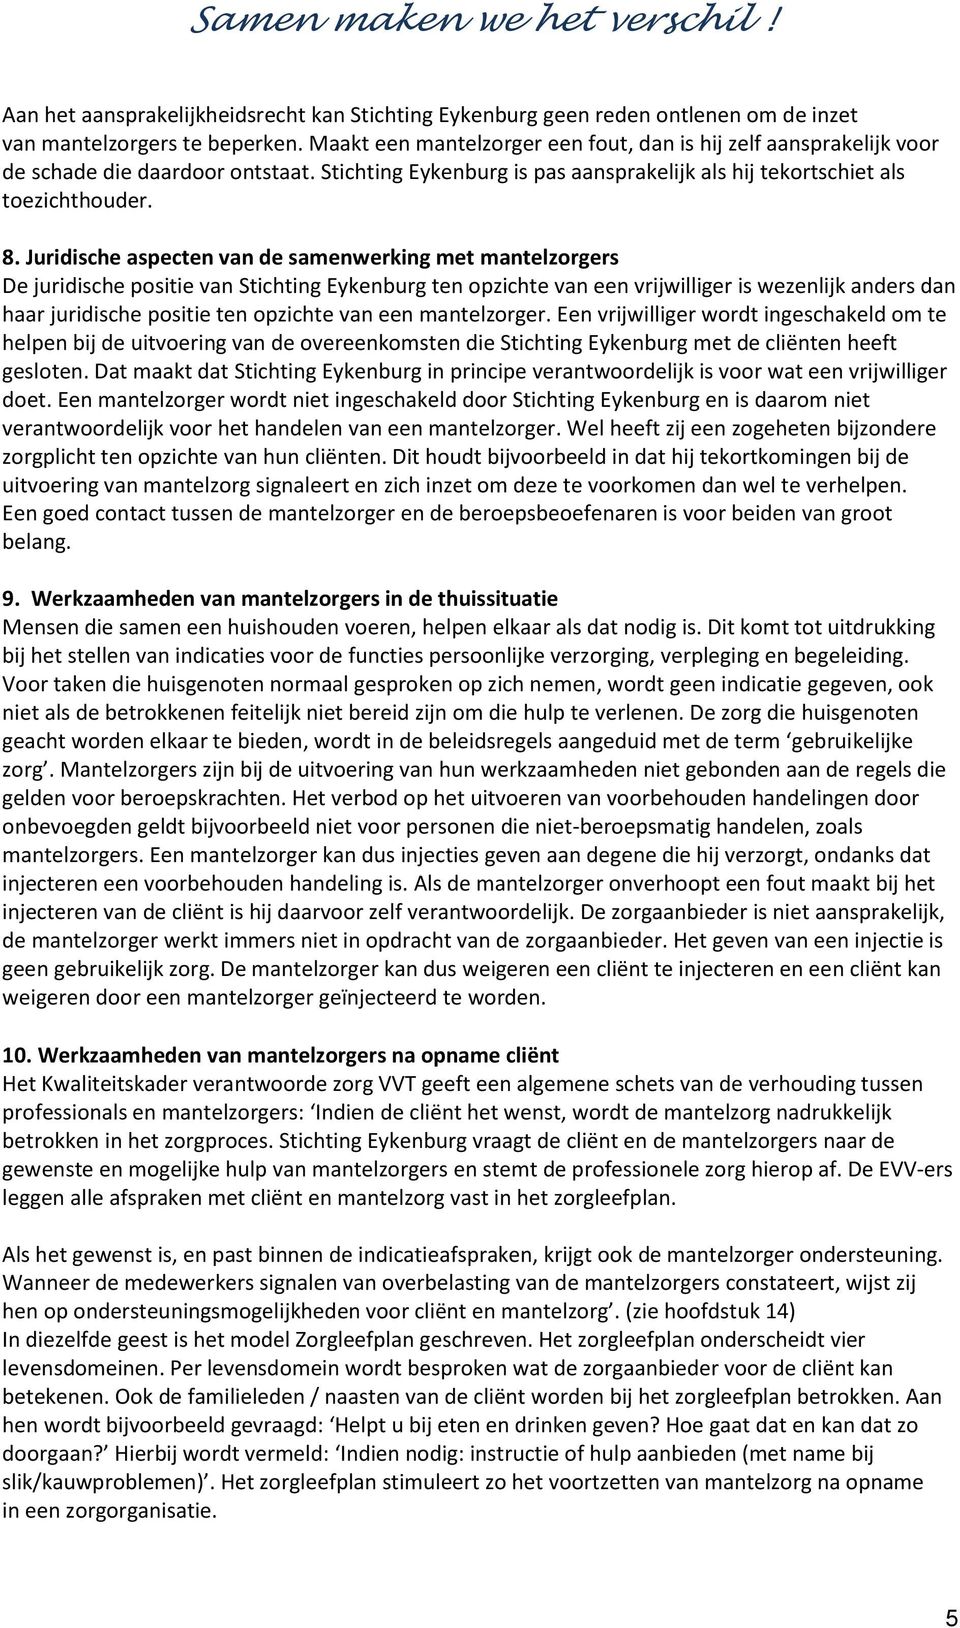 Juridische aspecten van de samenwerking met mantelzorgers De juridische positie van Stichting Eykenburg ten opzichte van een vrijwilliger is wezenlijk anders dan haar juridische positie ten opzichte